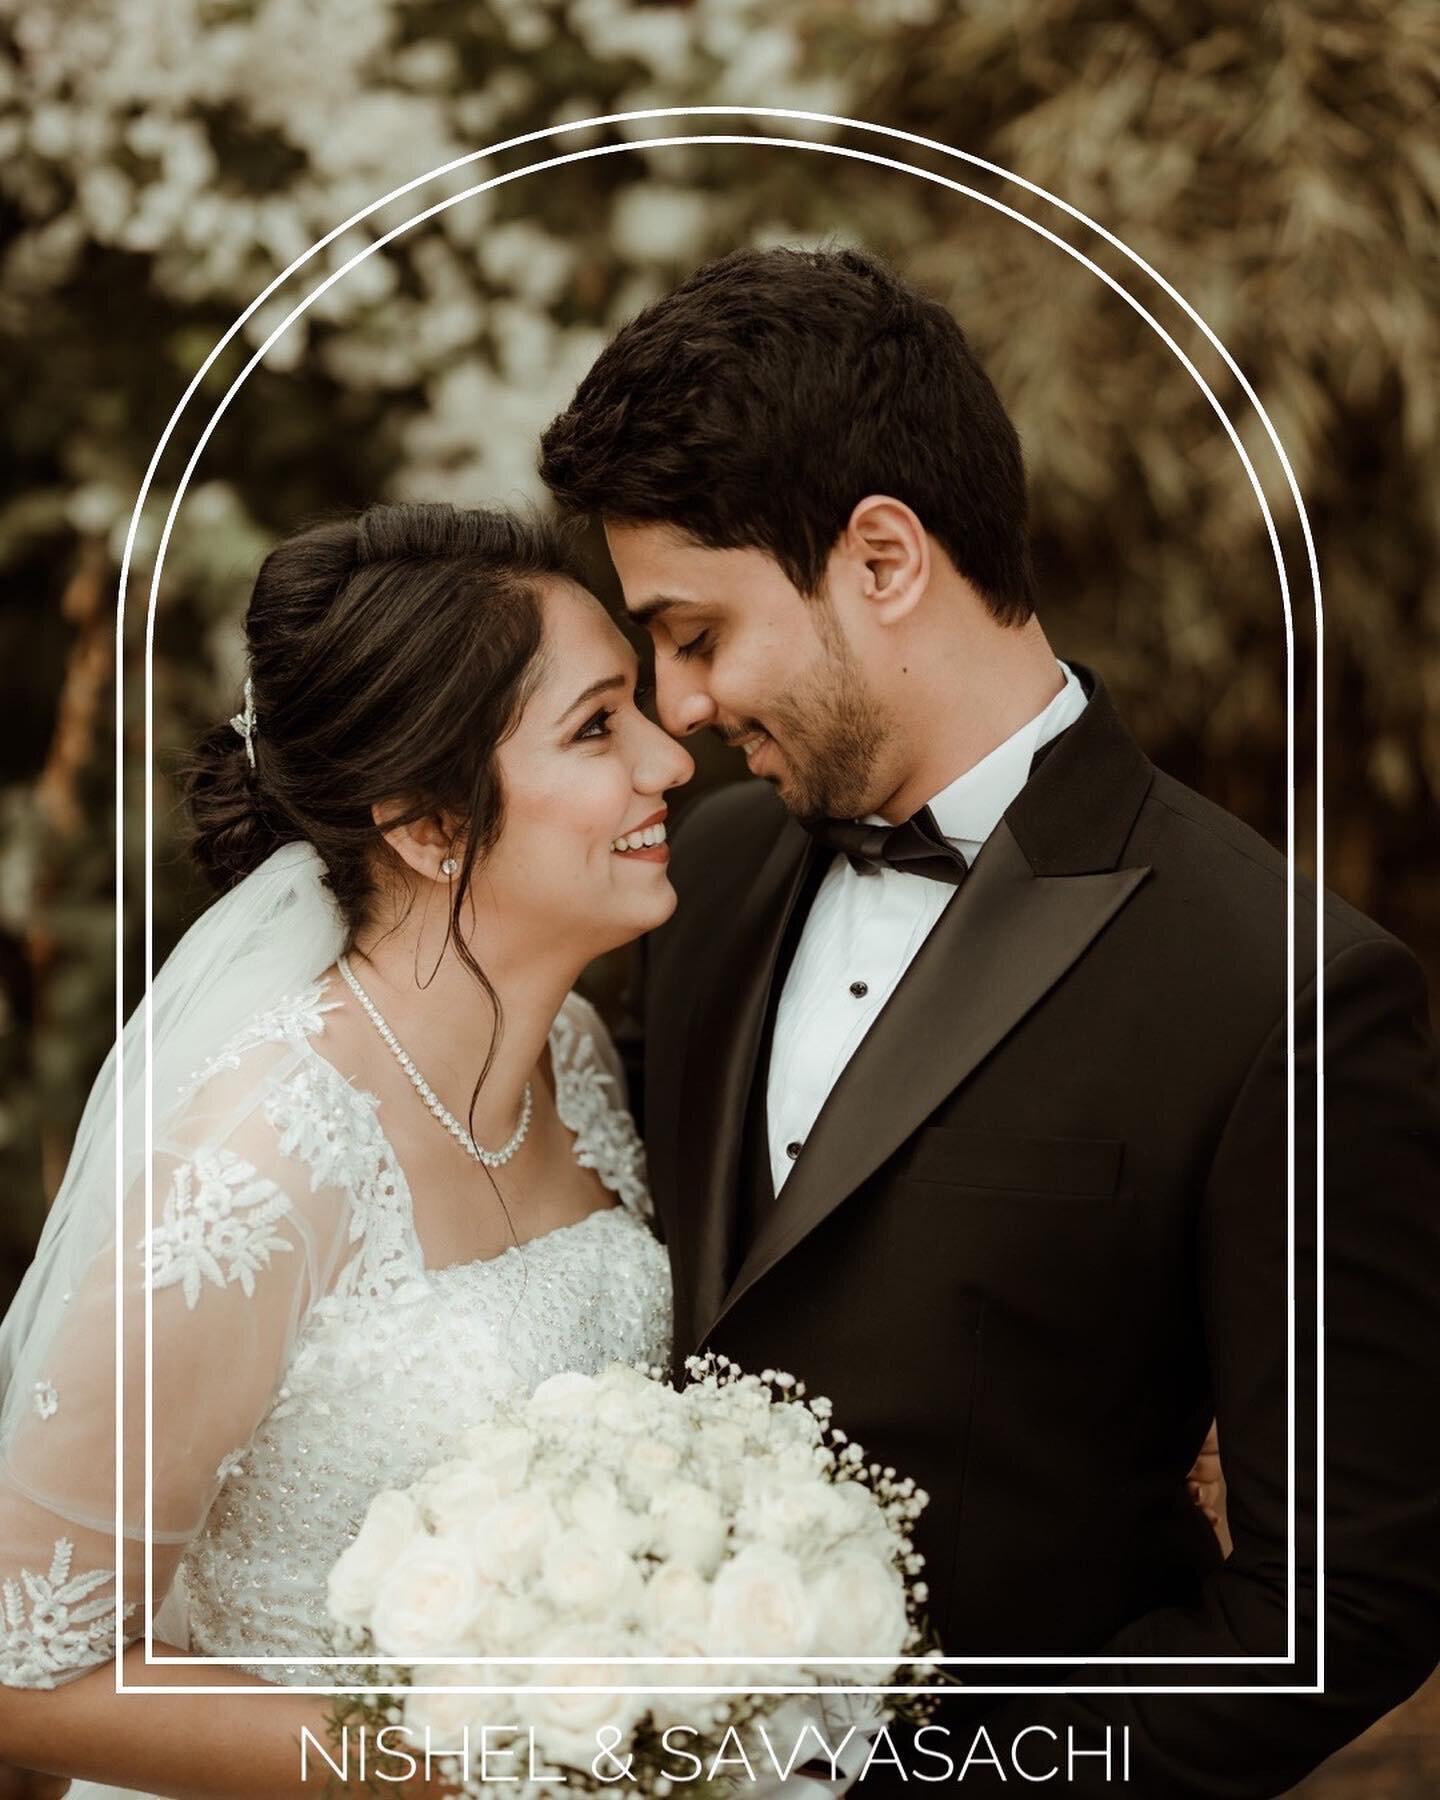 ✨✨Nishel + Savyasachi - Part 1✨✨
.
.
.
.
.
.
MUA : @alisharegomakeup 

#twosday
#BridesofMangaluru #BridesofIndia #indianbride
#GroomsofMangaluru #GroomsofIndia #Indiangrooms
#Bride #groom #indiagroom #Indianbride
#Weddingphotography #IndianWedding #